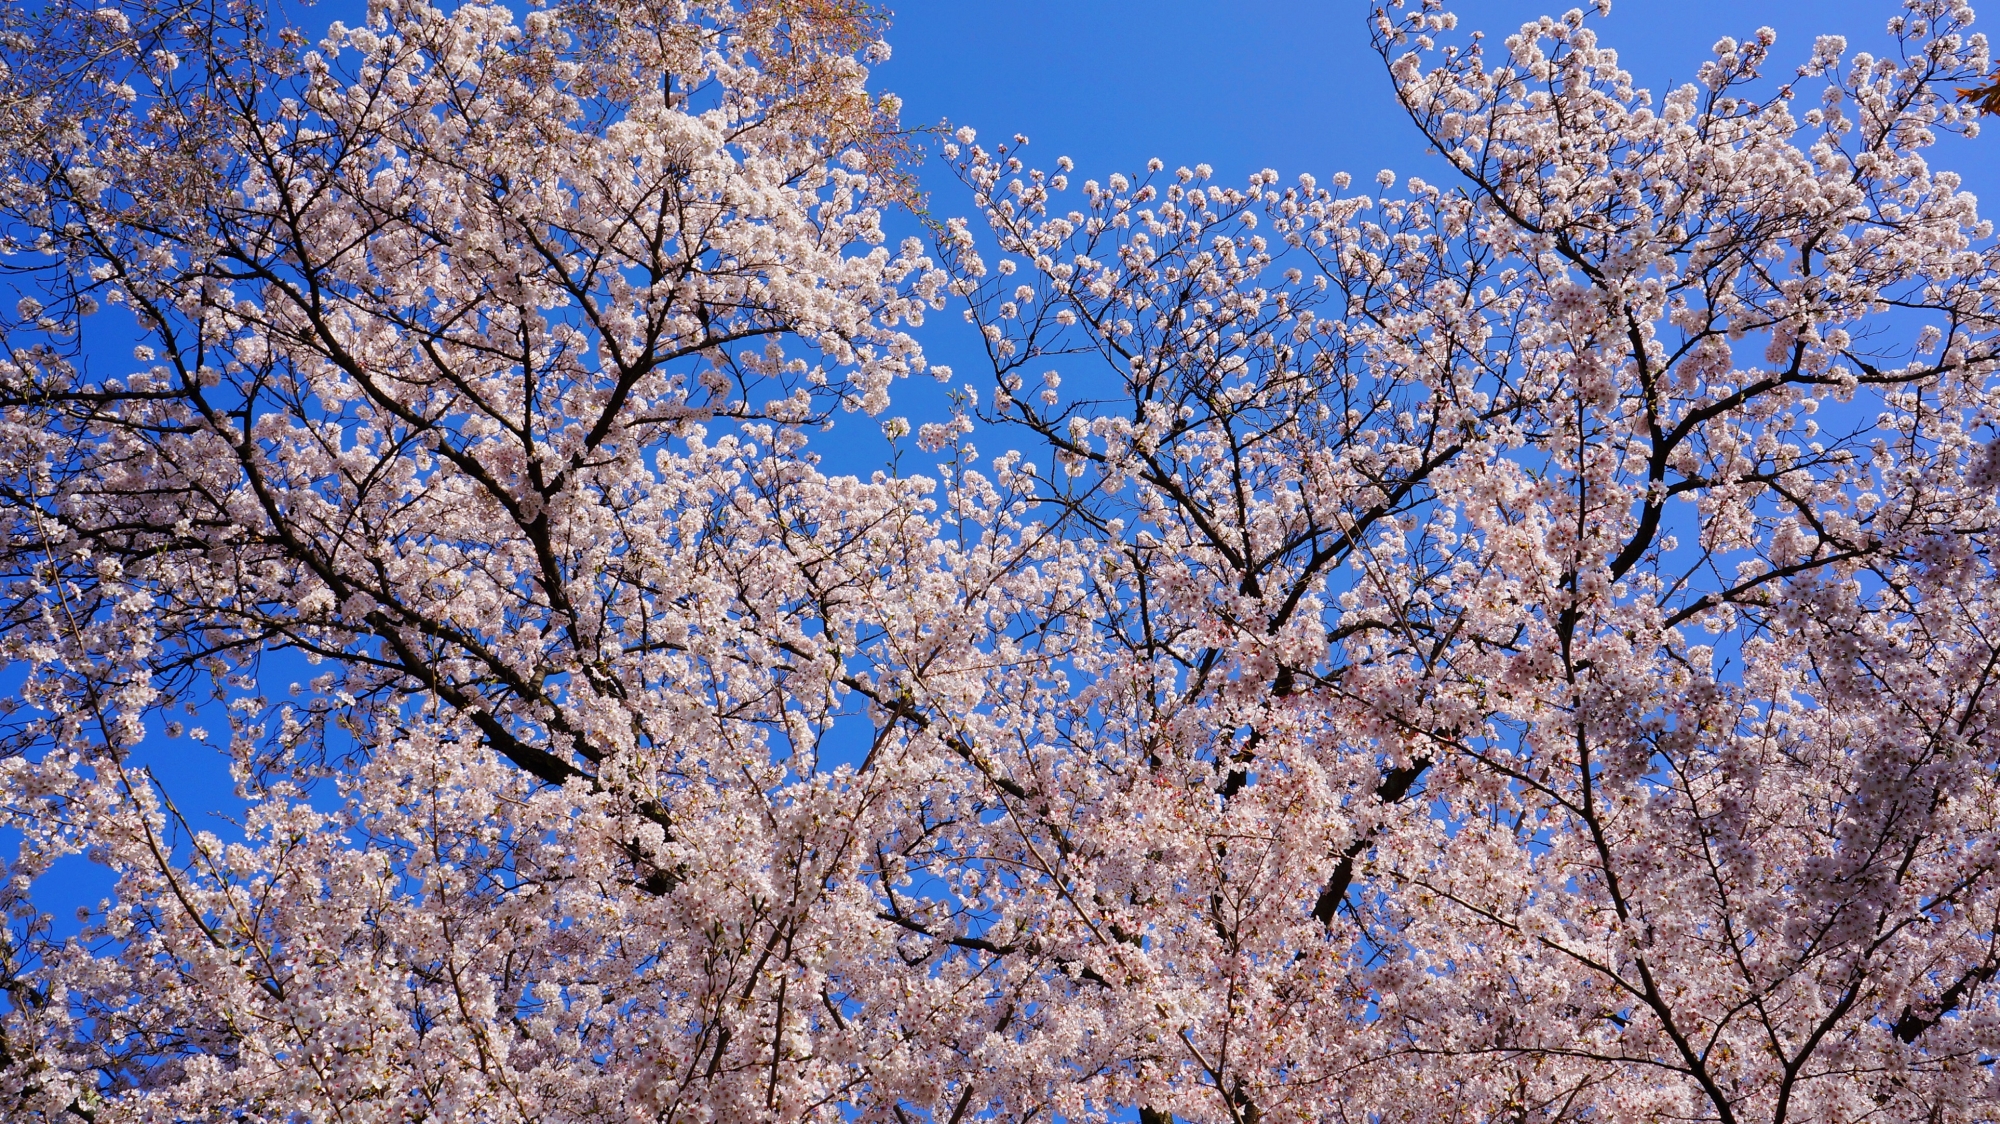 済んだ青空を優雅に彩る桜